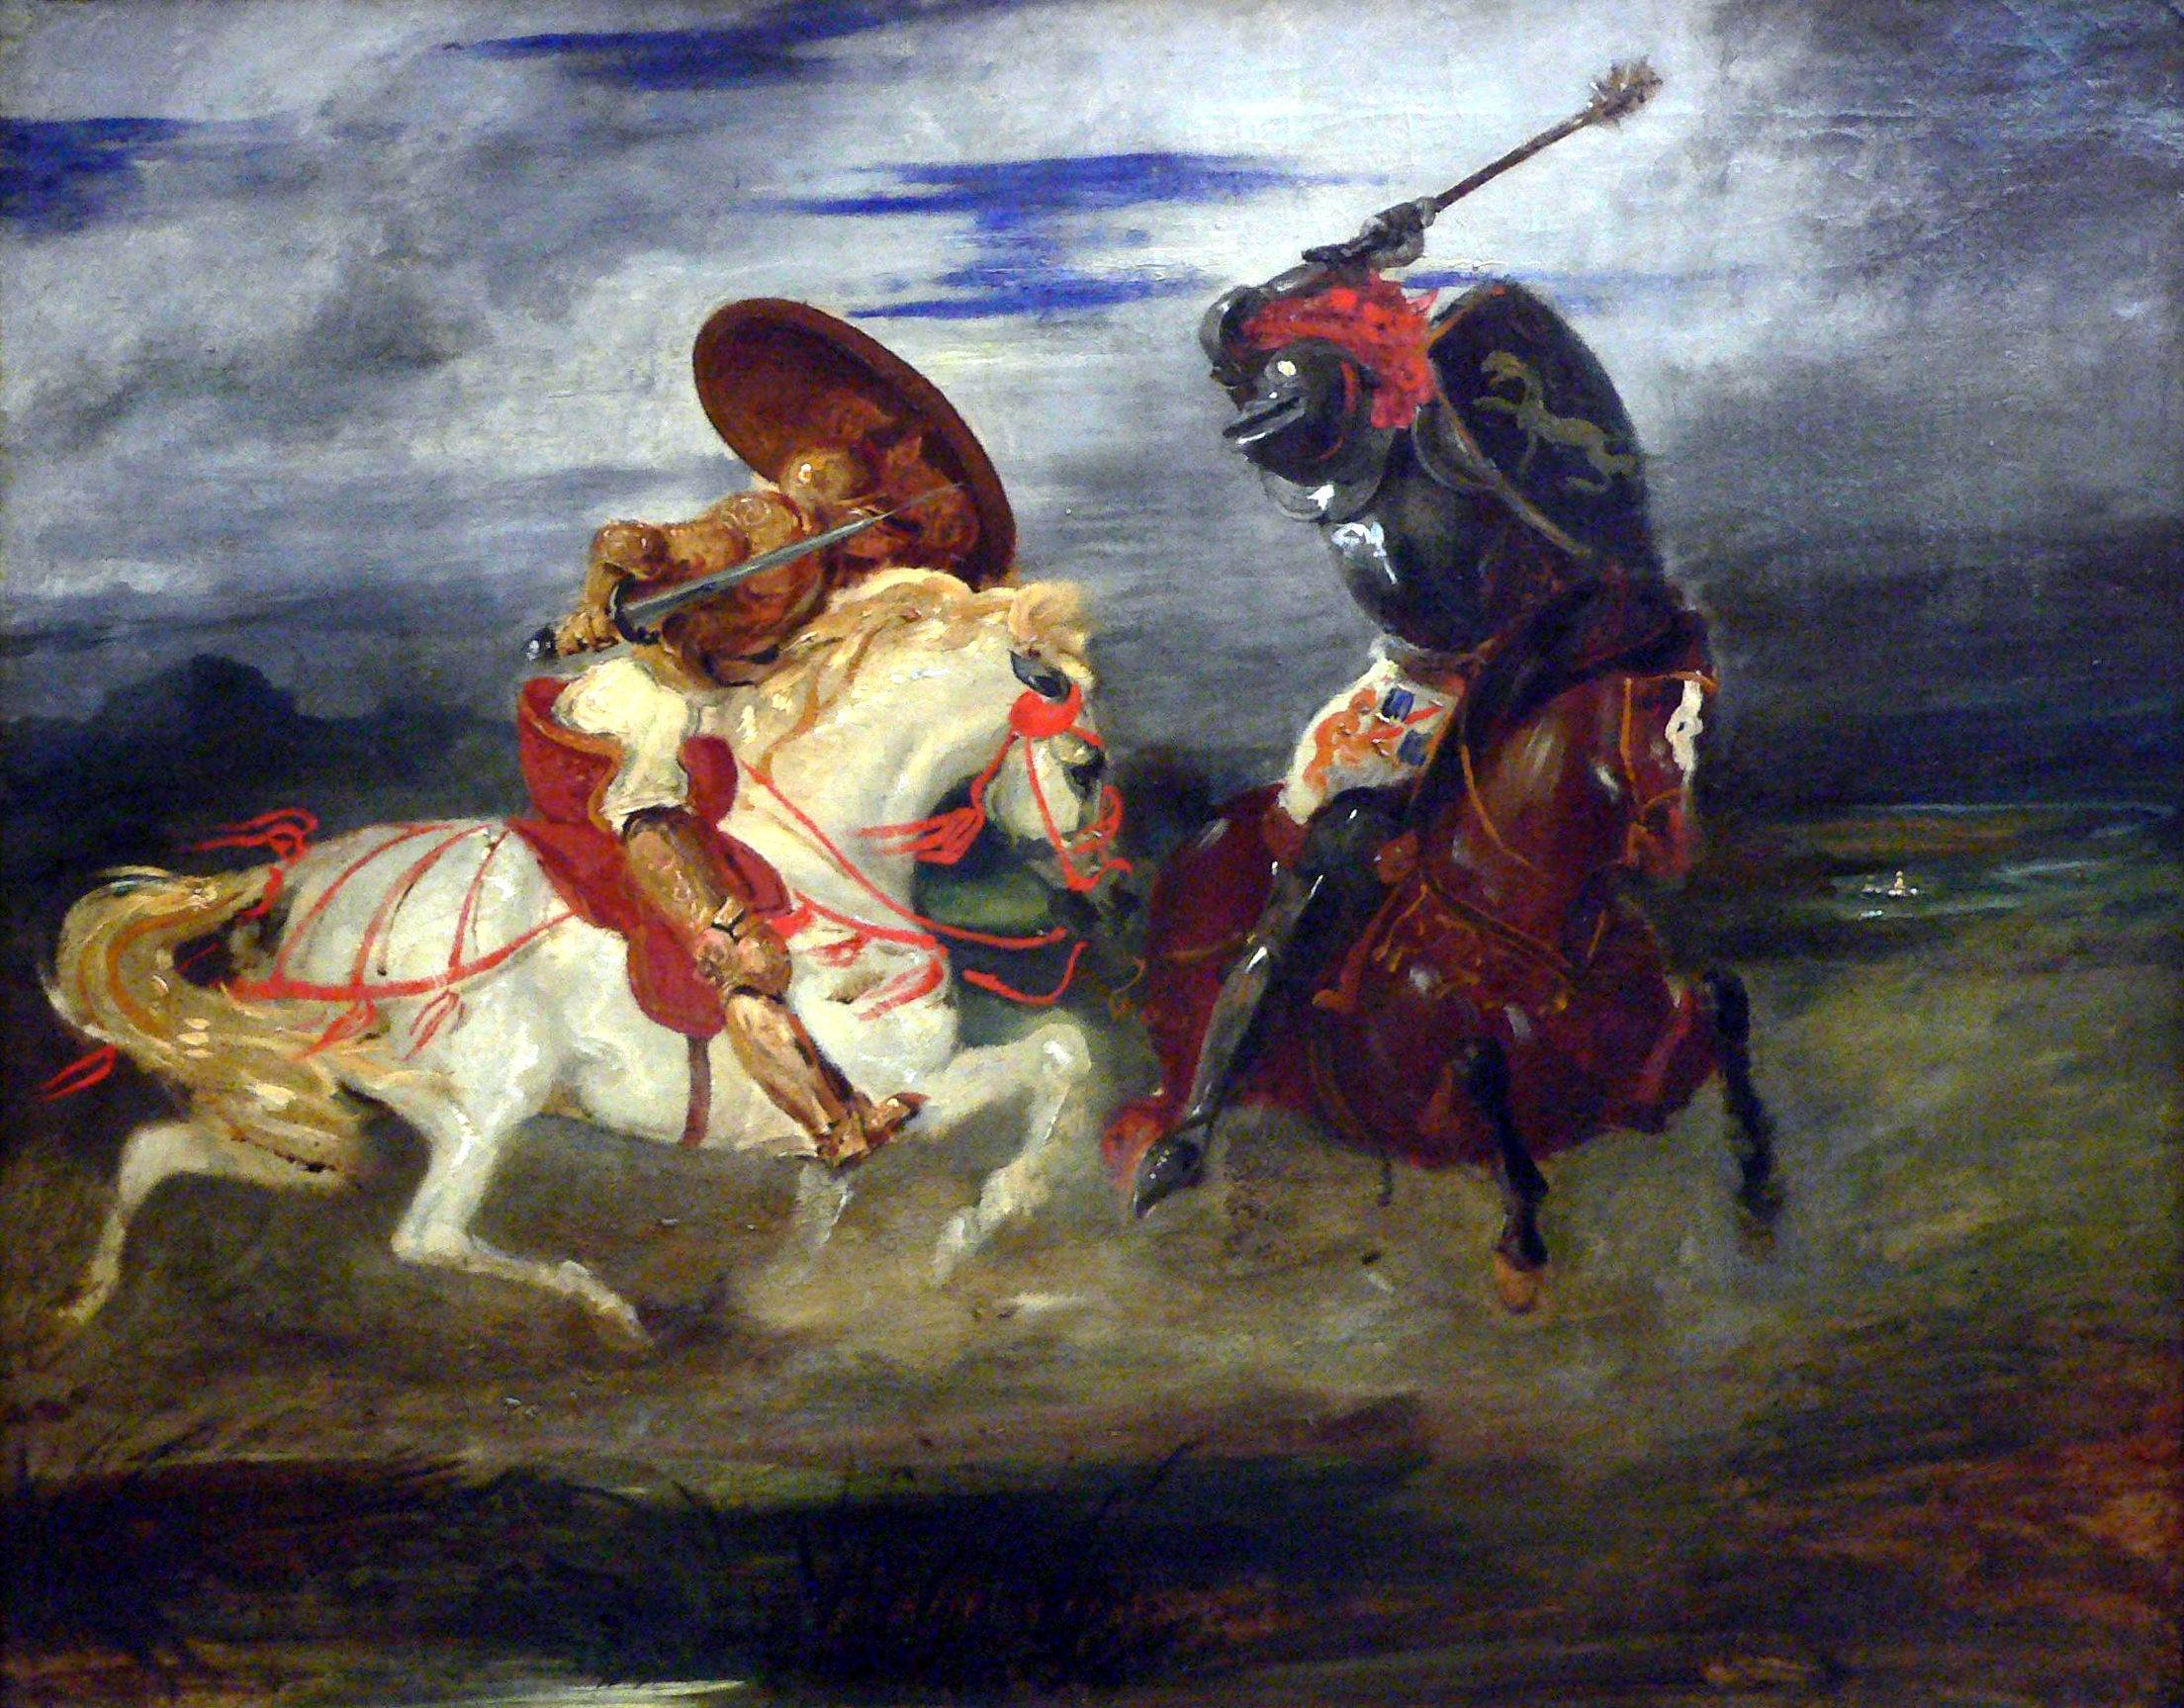 Combat de chevaliers dans la campagne, par Eugène Delacroix (v. 1824), musée du Louvre.
Crédit image : domaine public